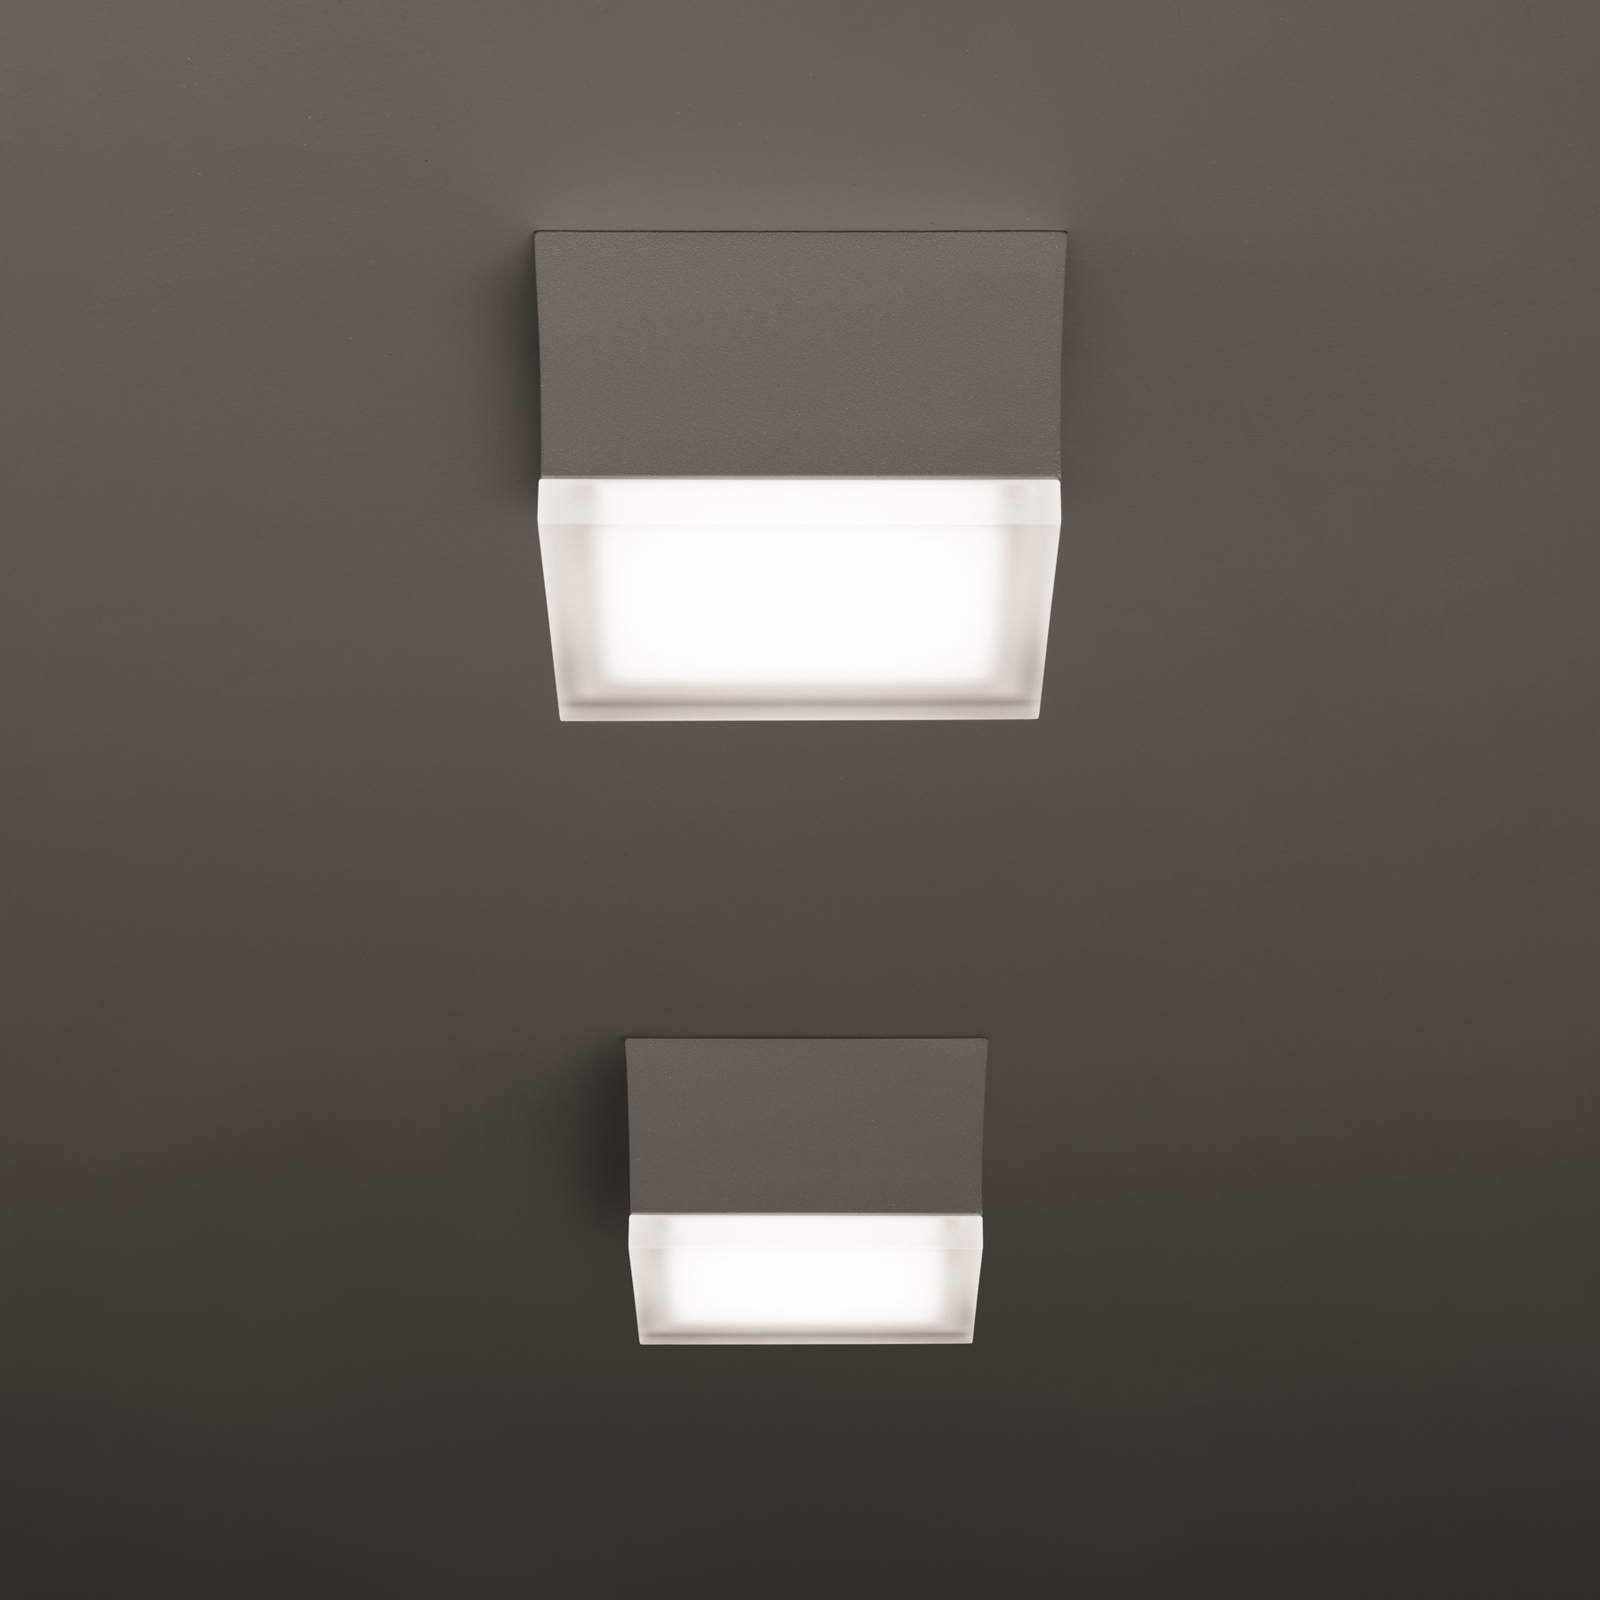 Venkovní nástěnné svítidlo LED 1425 grafit 12,5 x 12,5 cm